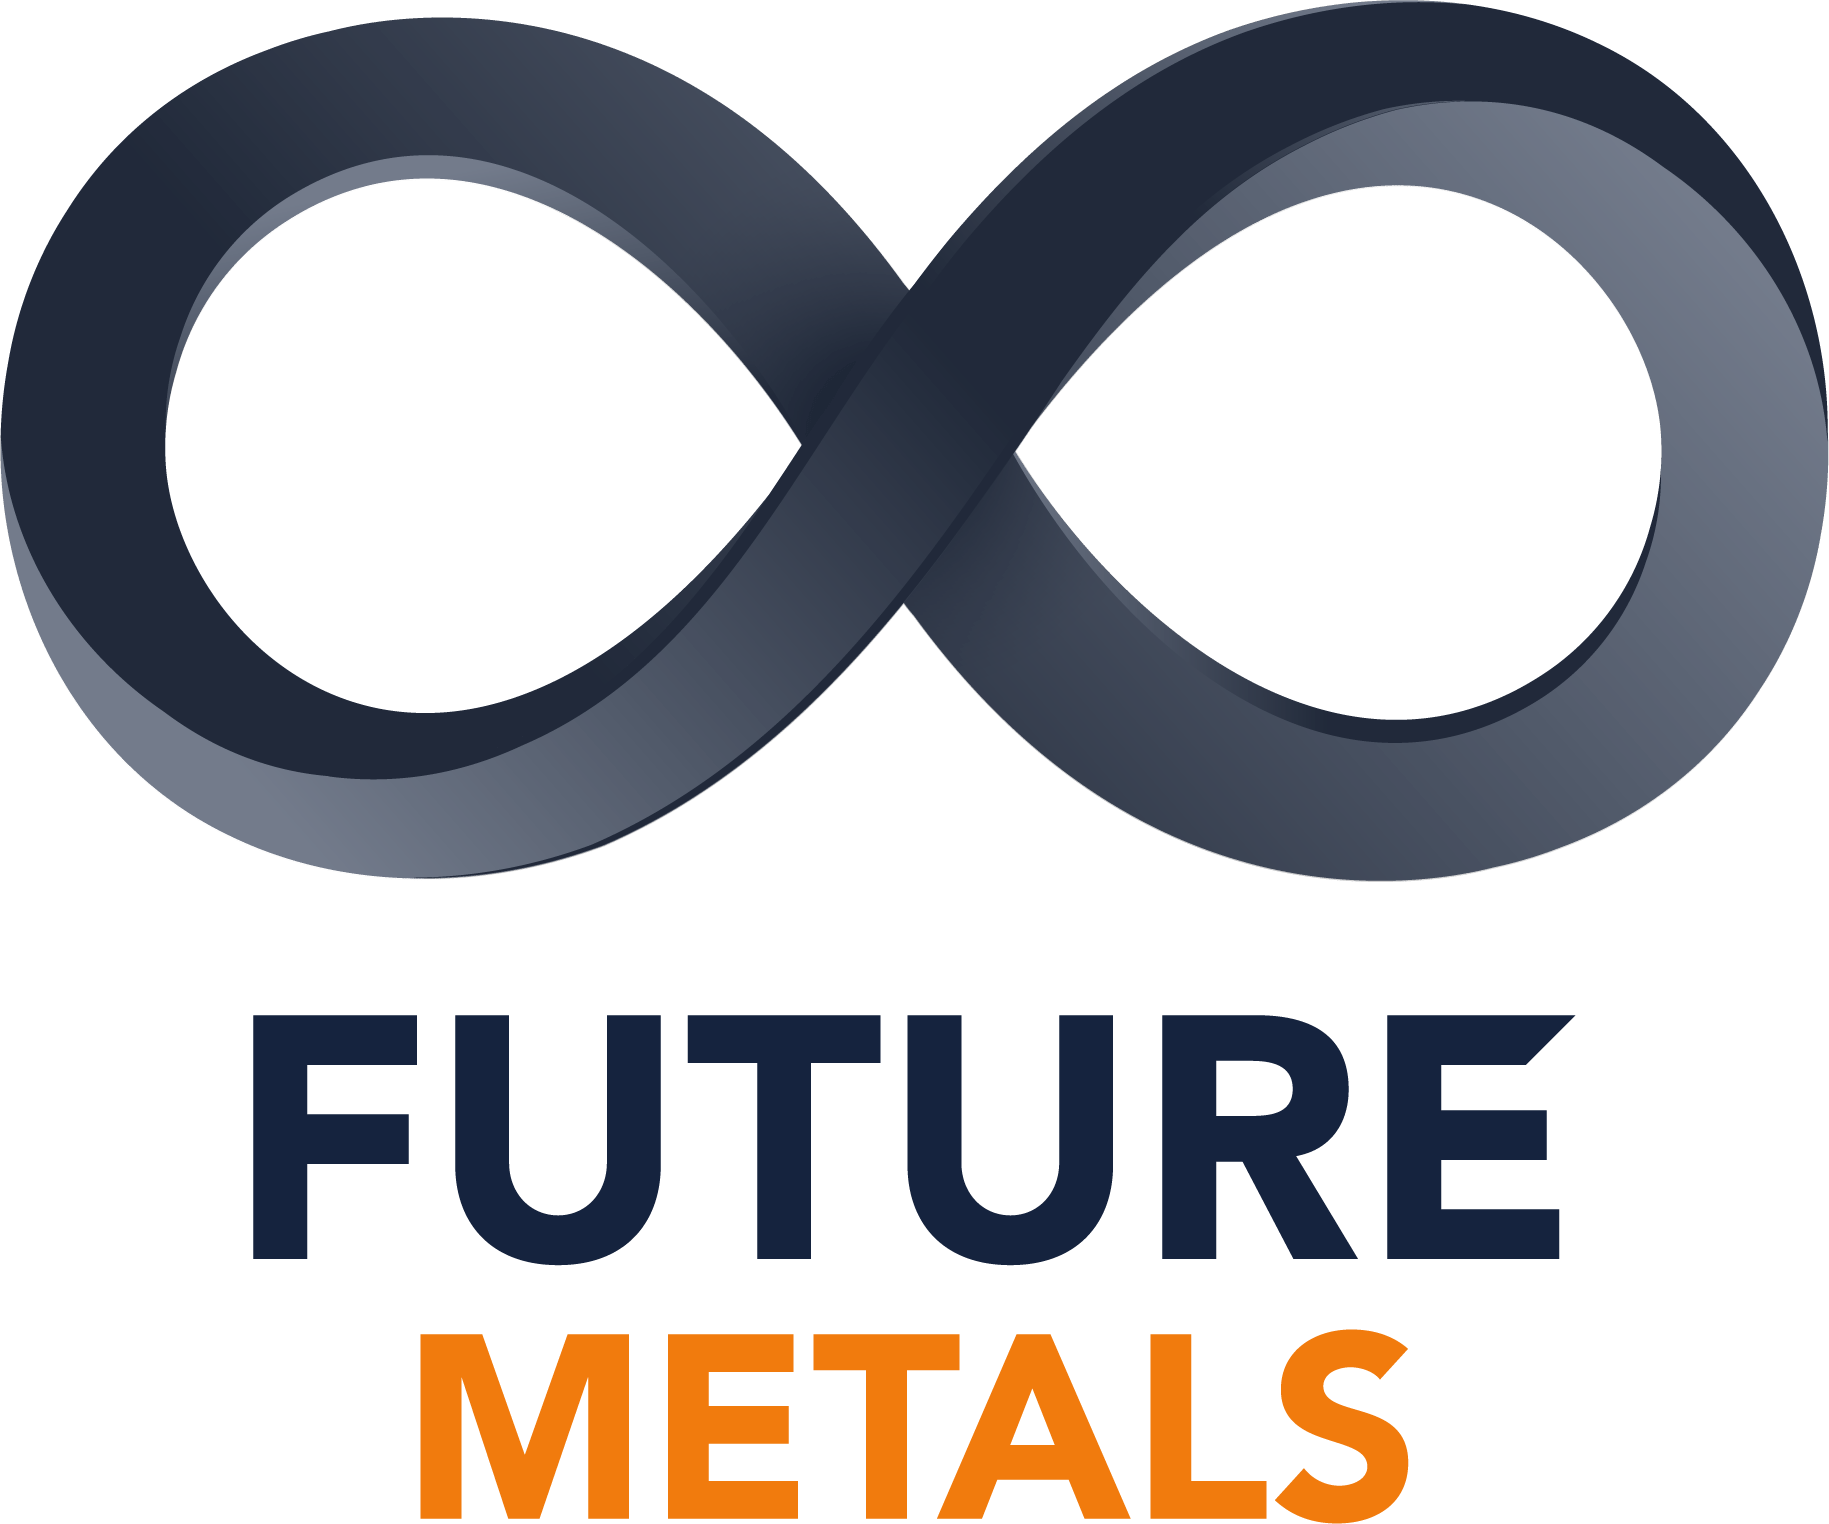 Future Metals – FME